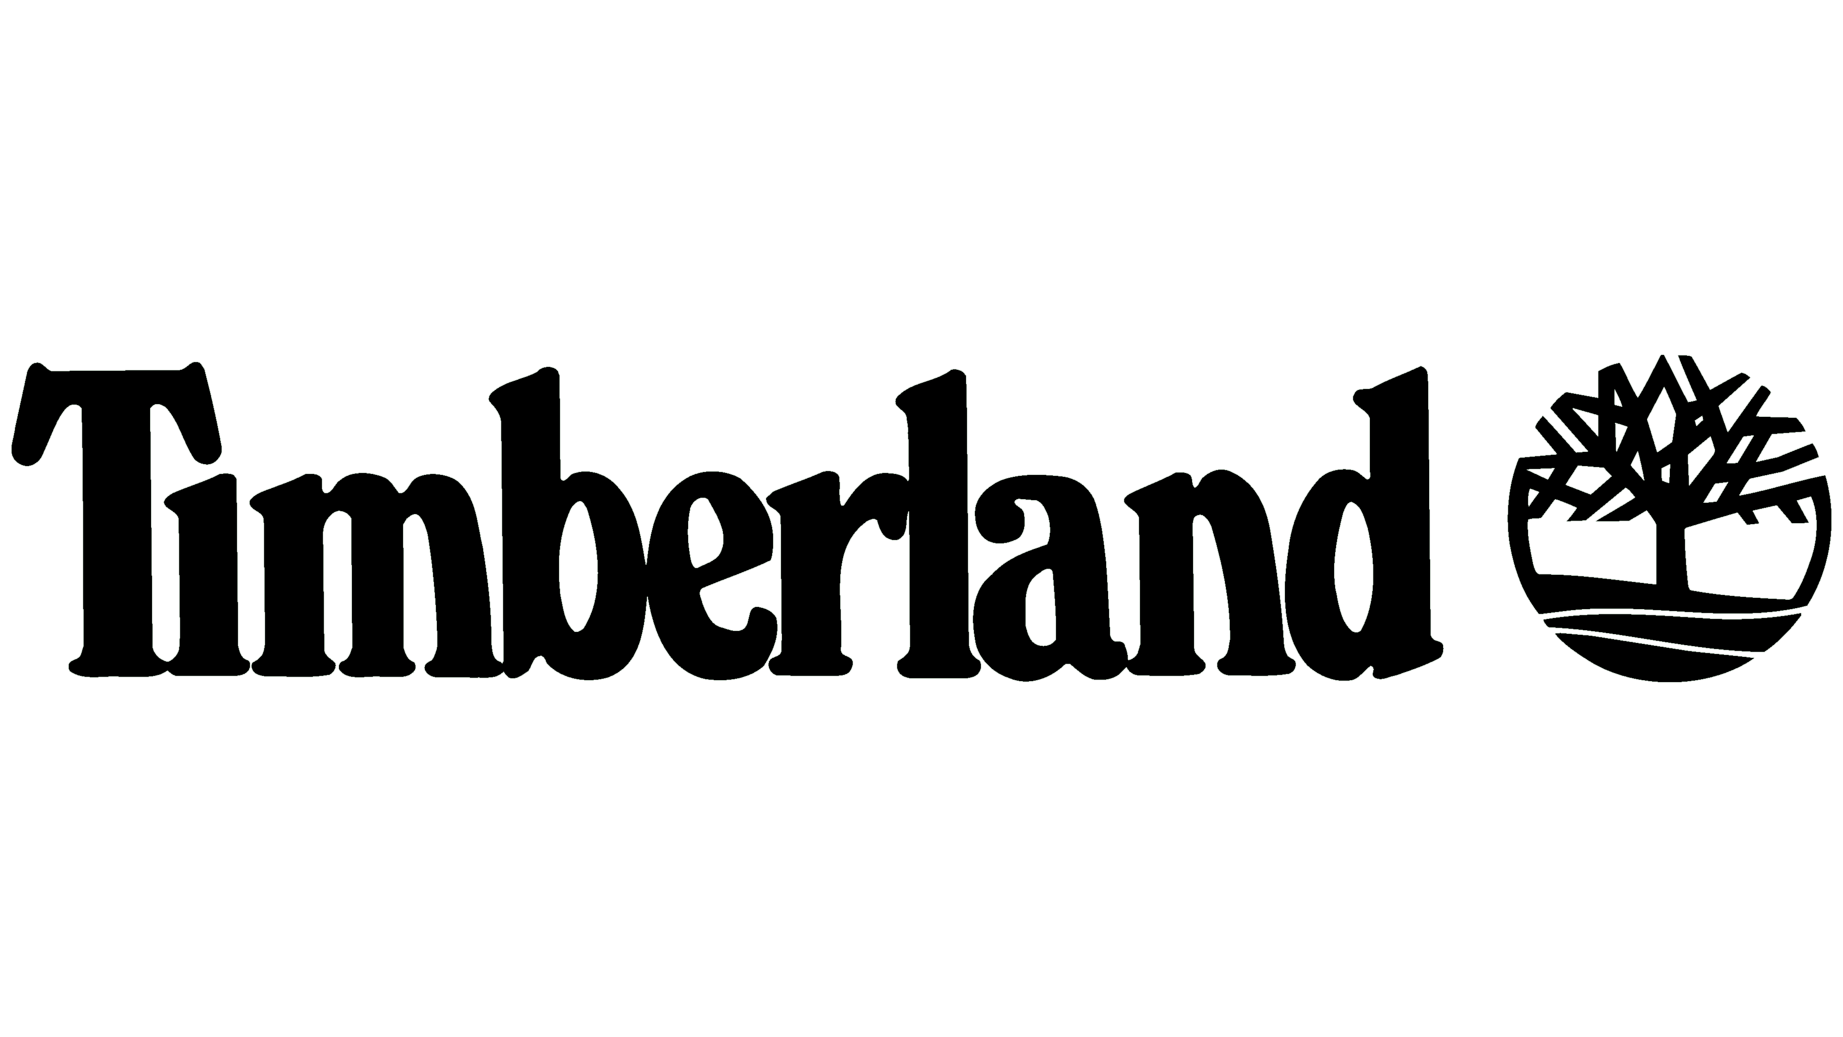 Timberland sign